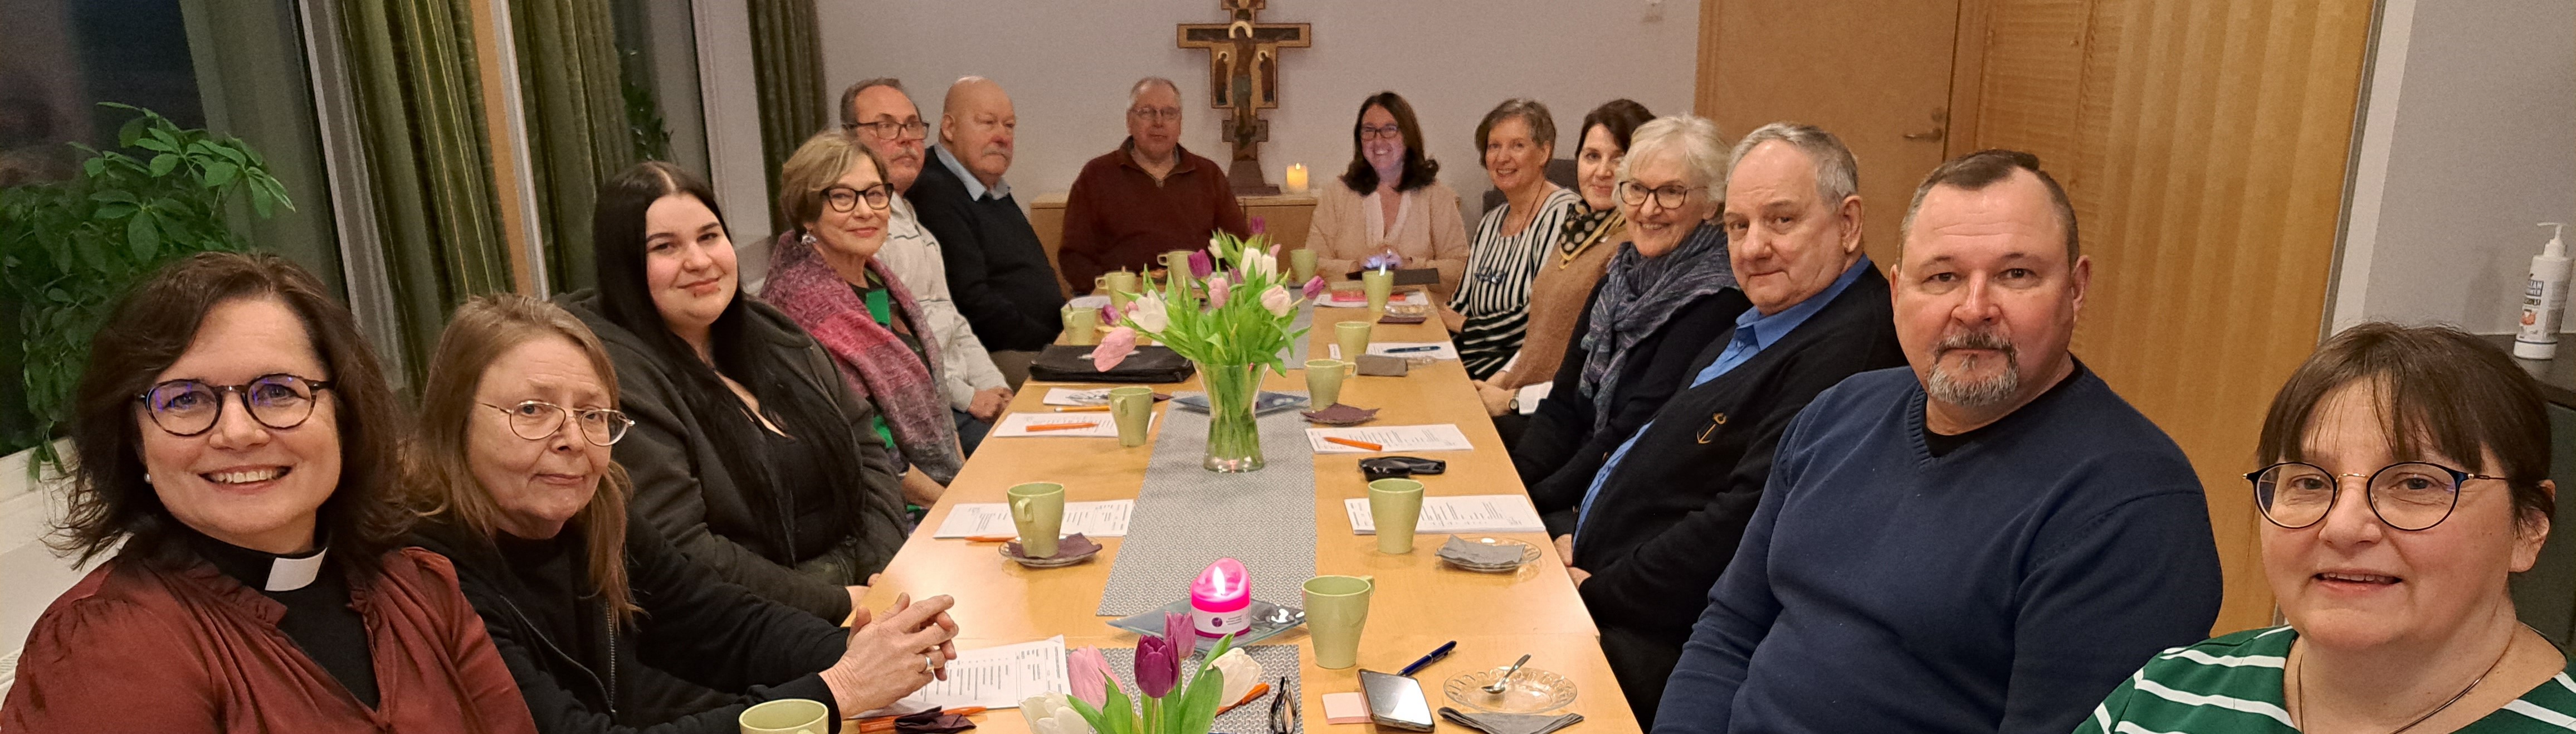 Raaseporin suomalaisen seurakunnan seurakuntaneuvosto kokoonpano